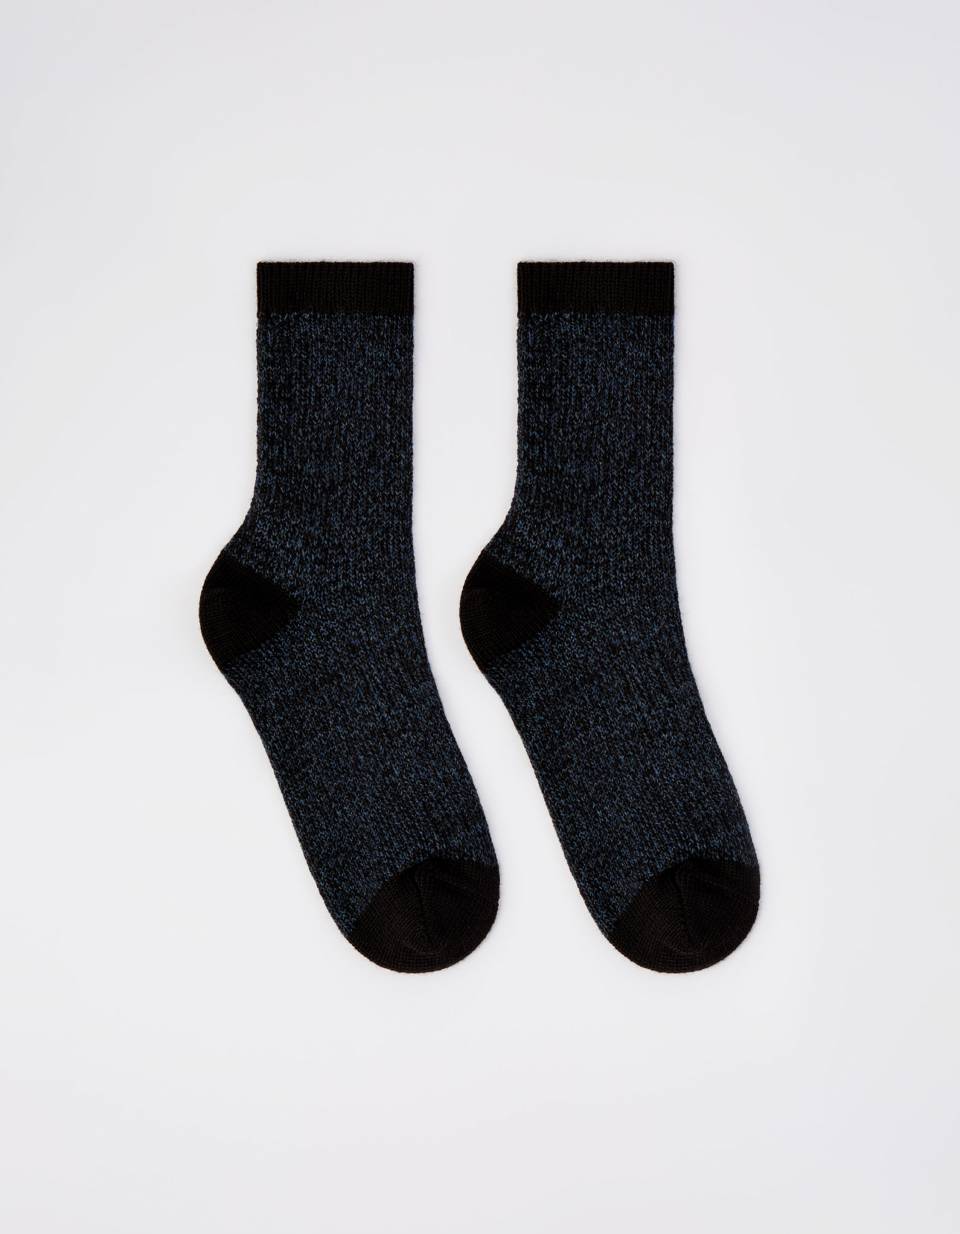 Вязаные носки шерстяные для мальчиков женские шерстяные носки вязаные носки носки башмак подарок 8 марта